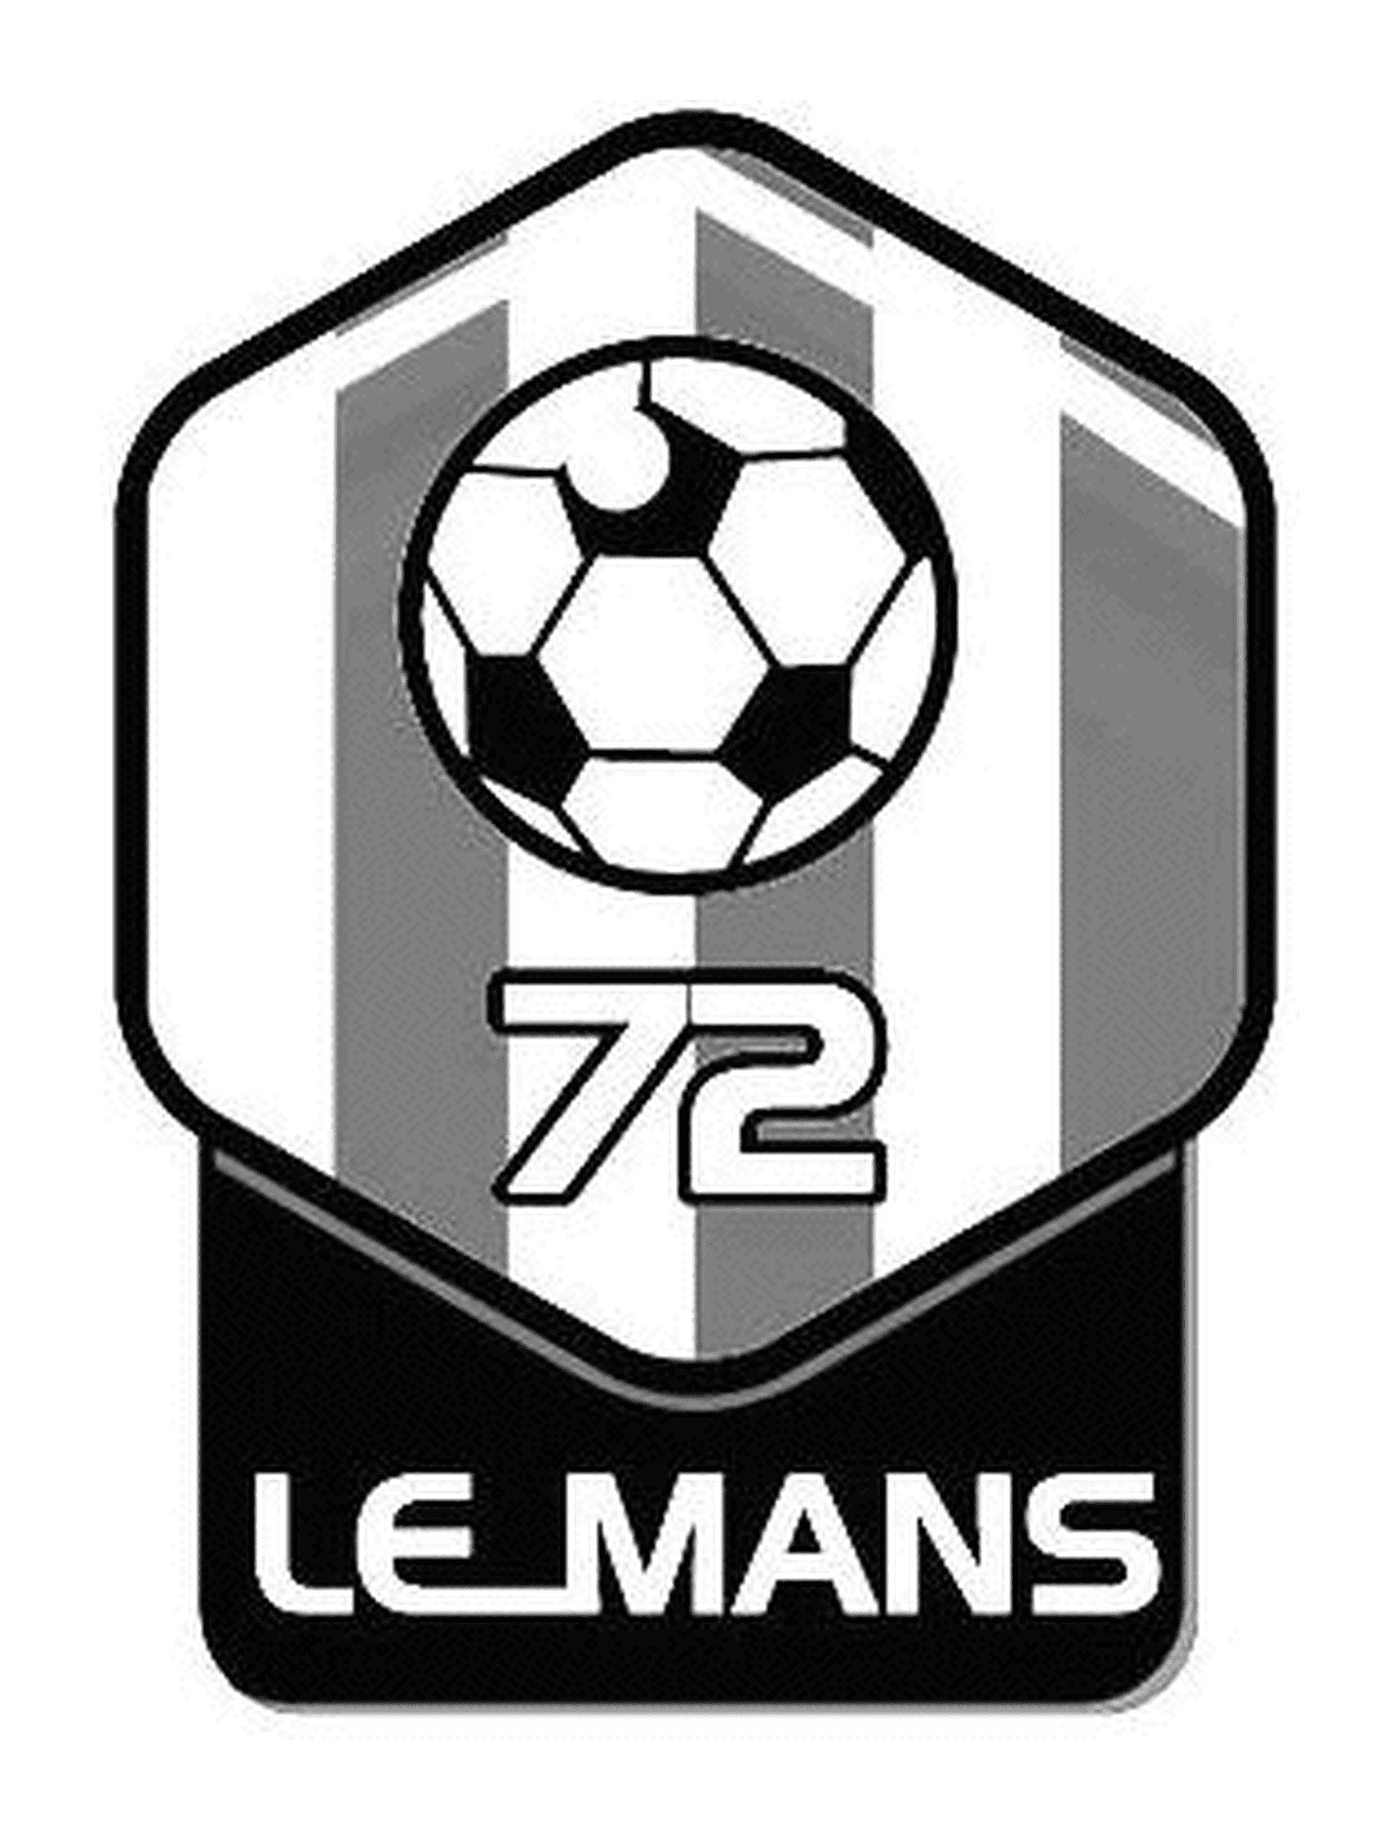  Логотип < < Человек > > 